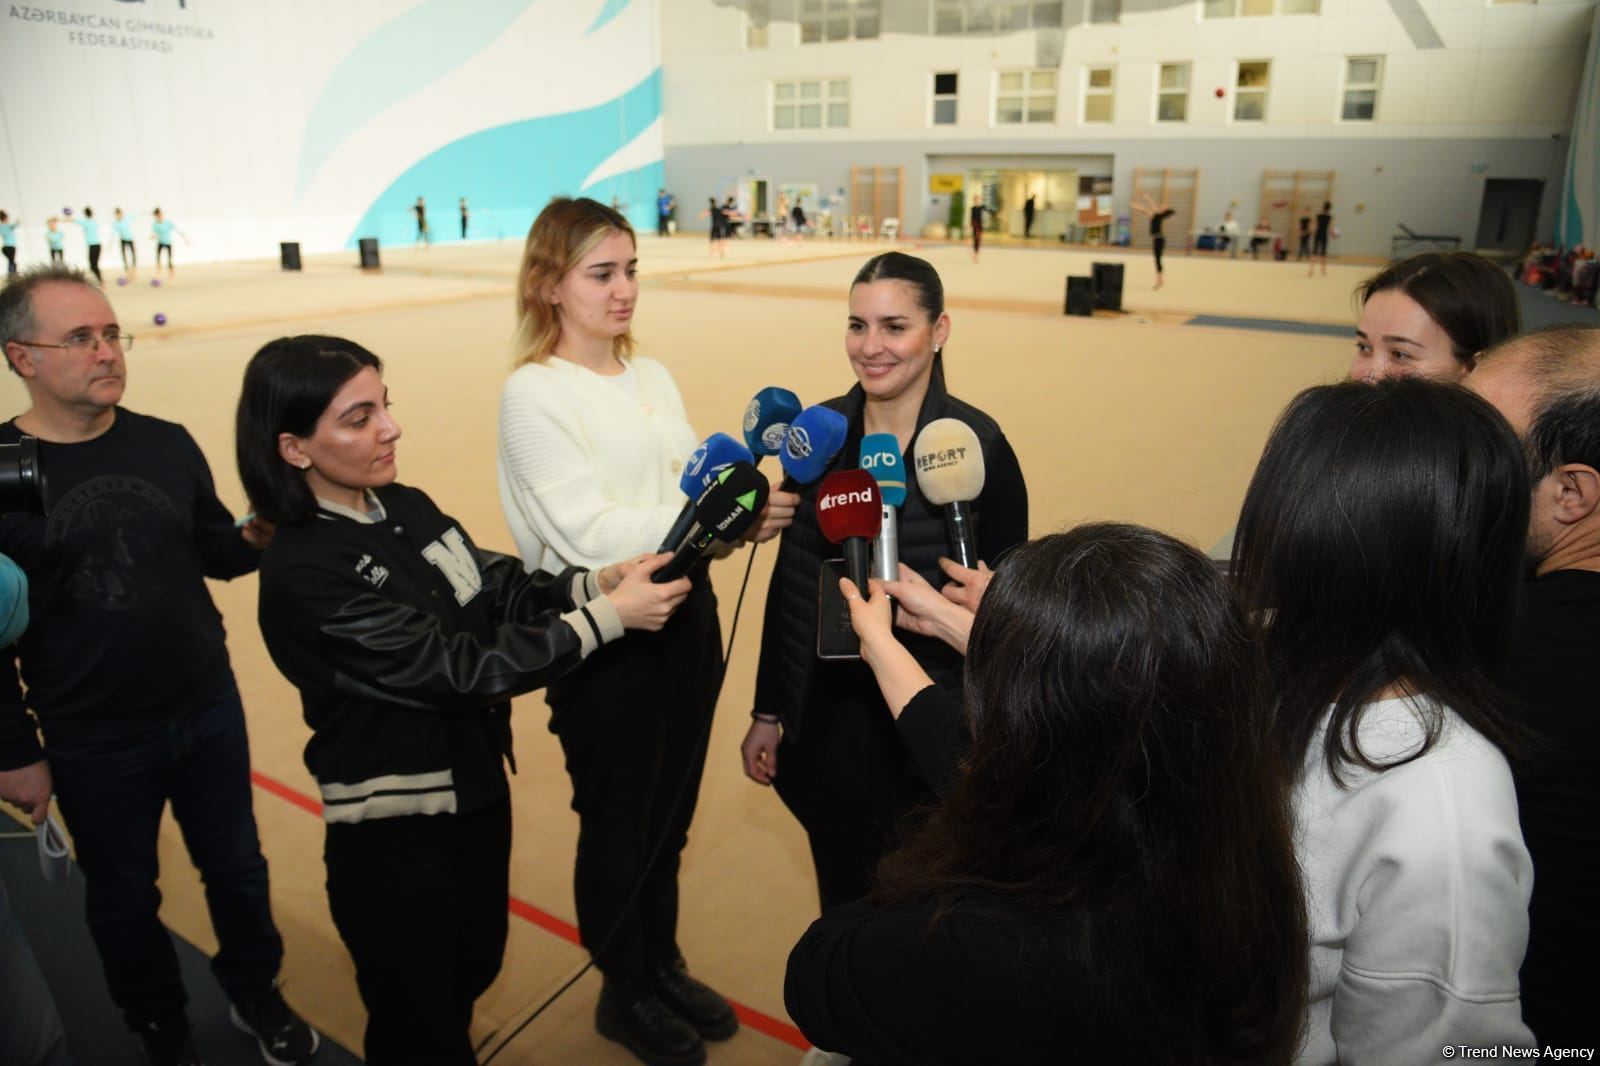 Azərbaycan gimnastları dünya səviyyəsində yüksək nəticələr əldə edib - İspan xoreoqraf (FOTO)